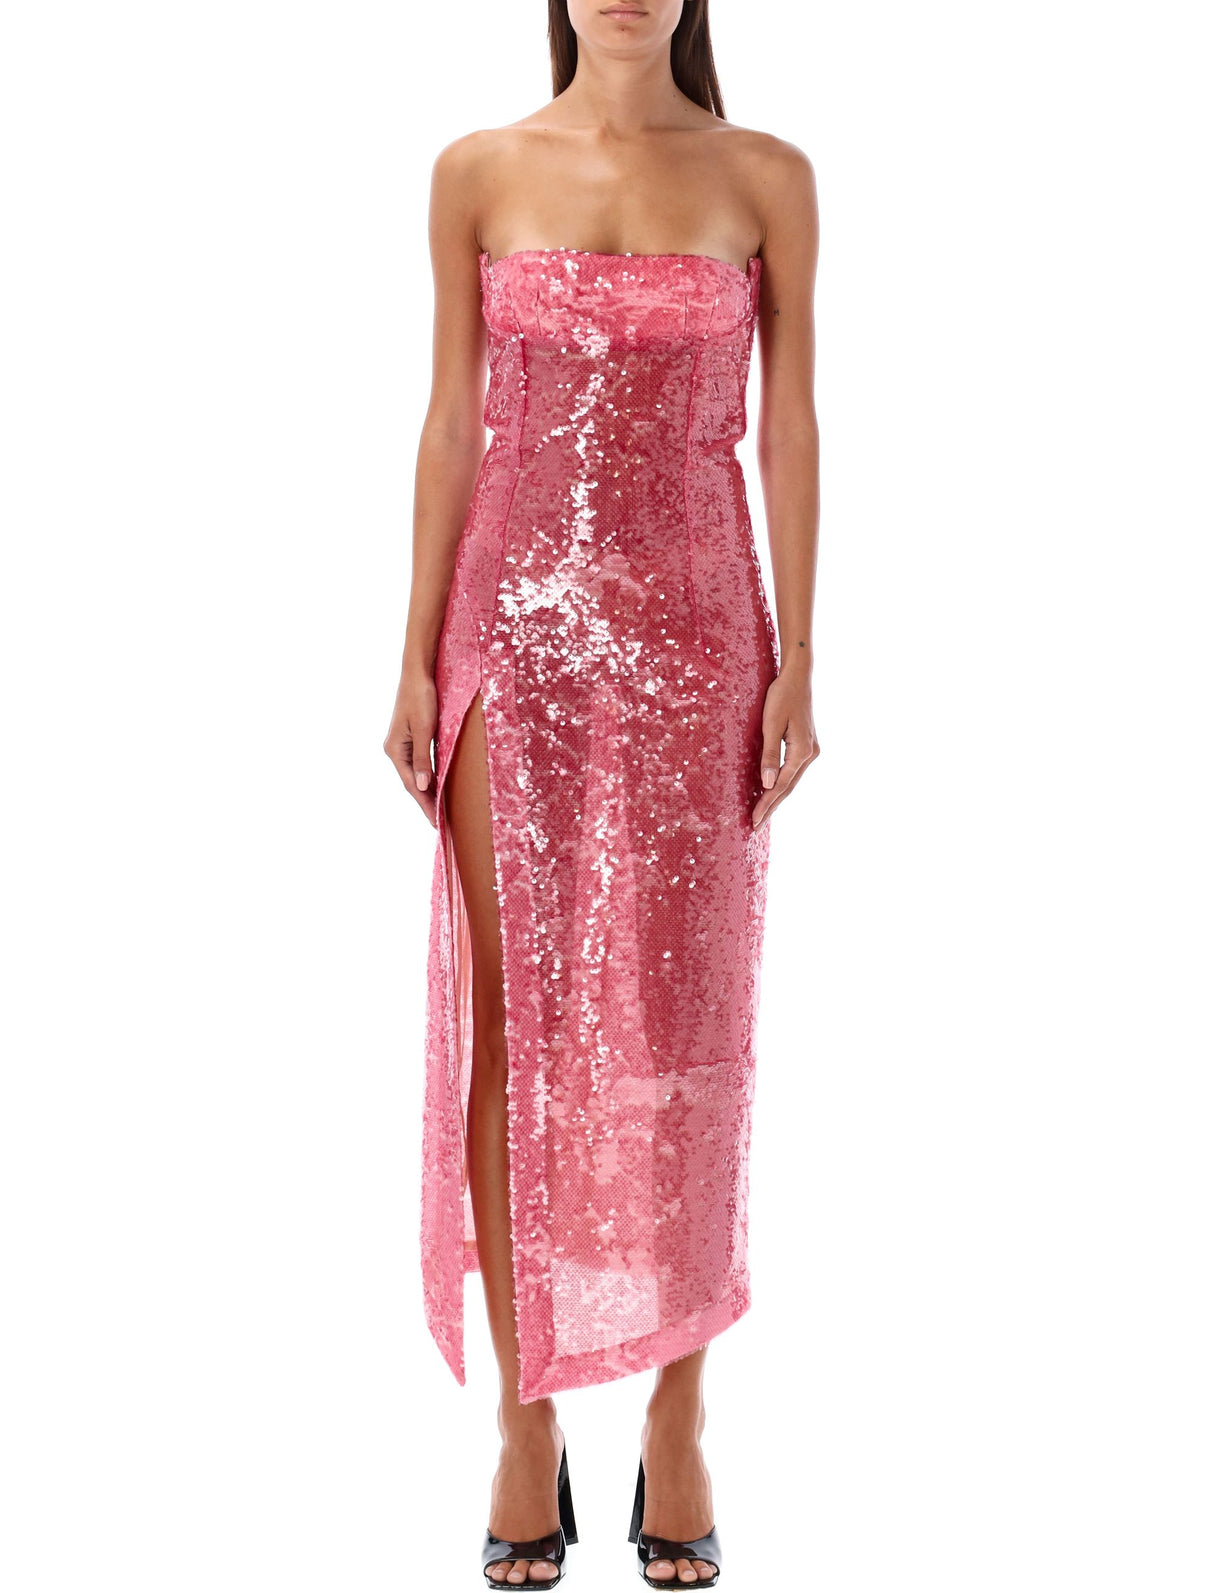 Váy Sequin Midi cổ điển màu hồng nhạt